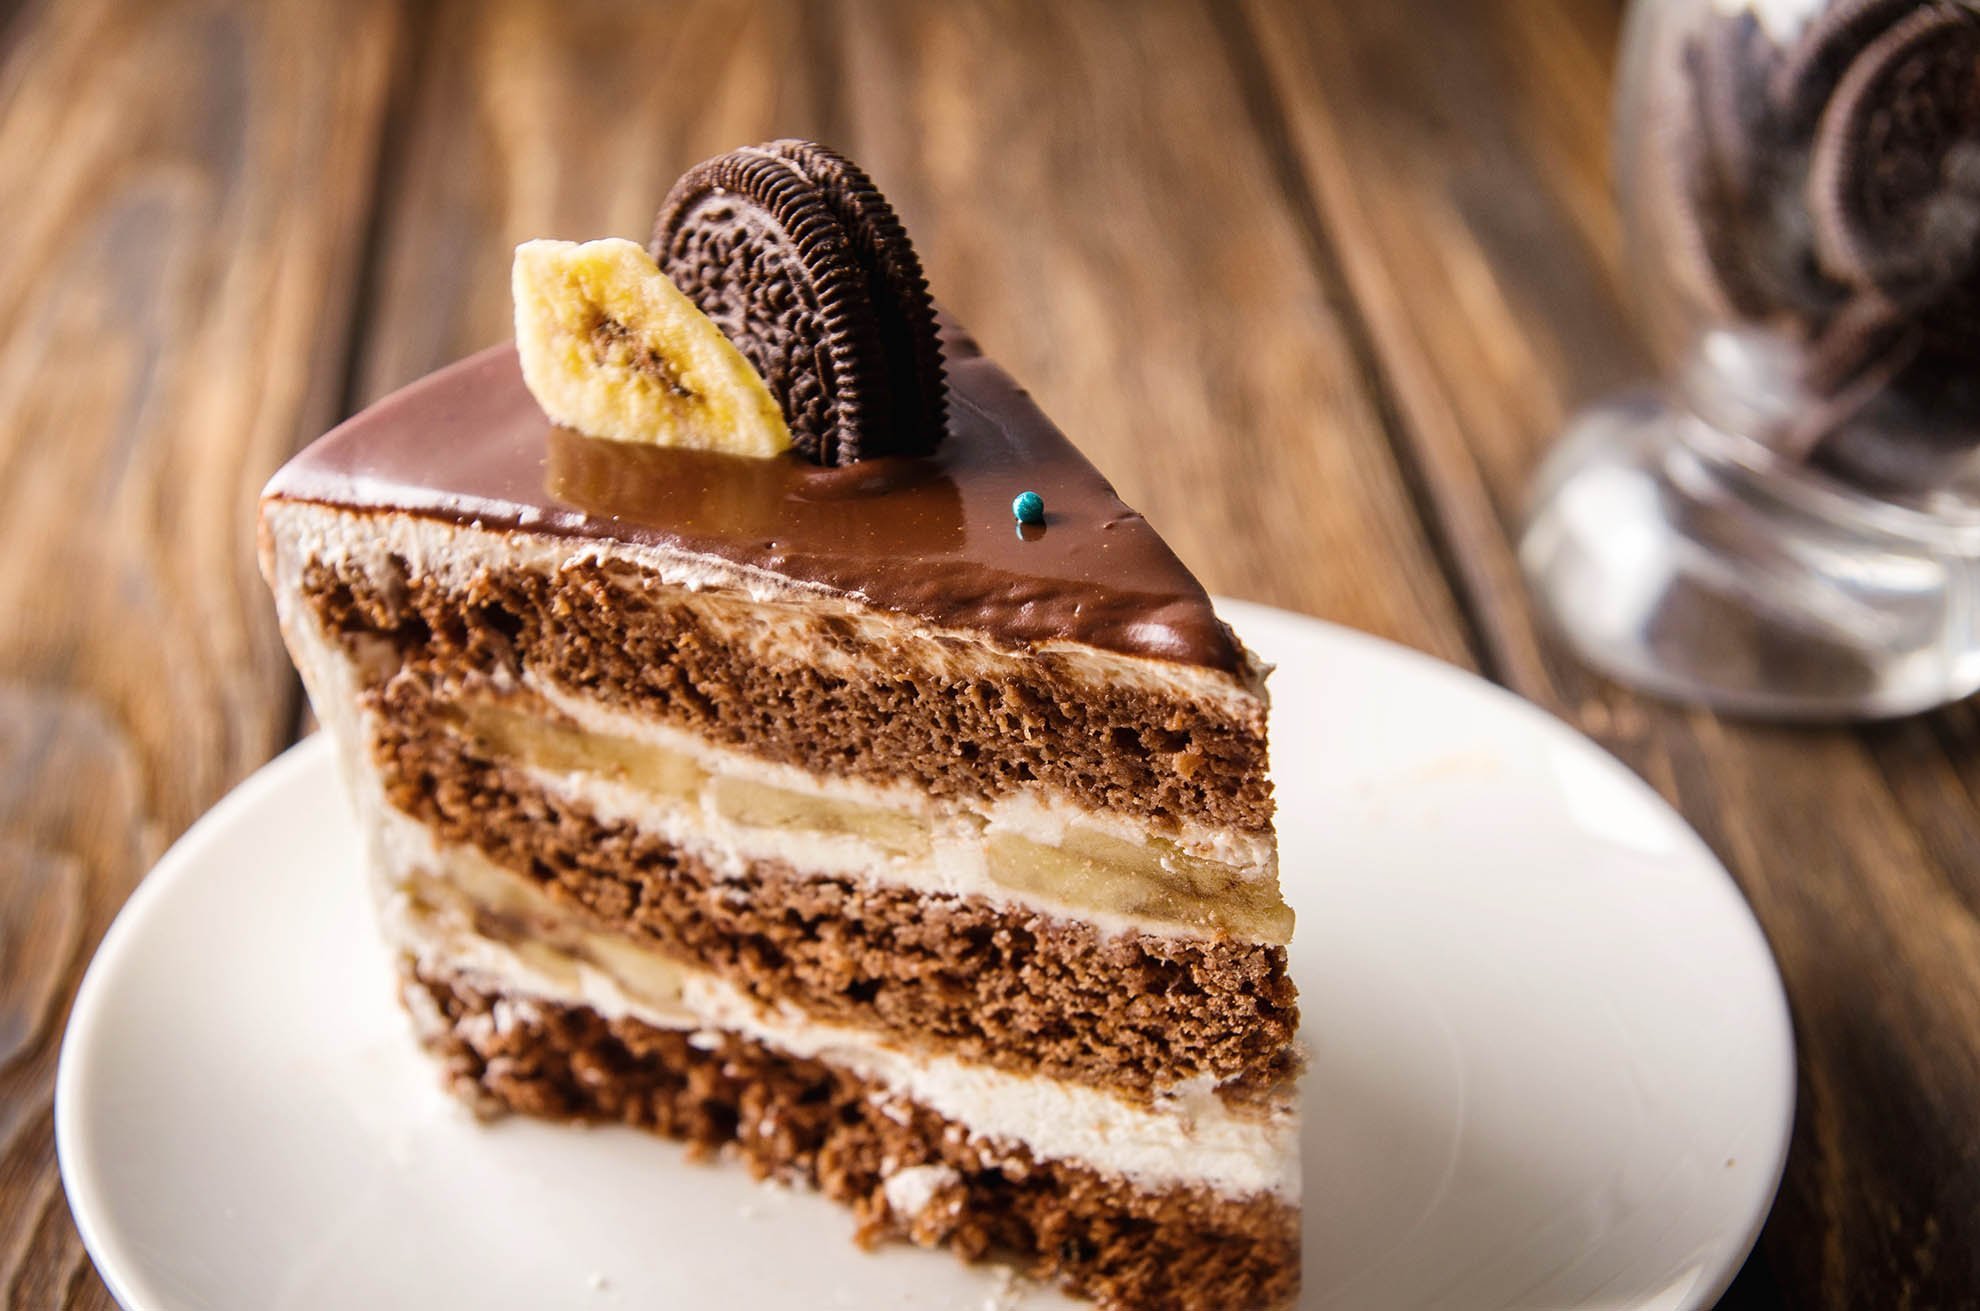 Как приготовить простой шоколадный торт: топ-4 рецепта